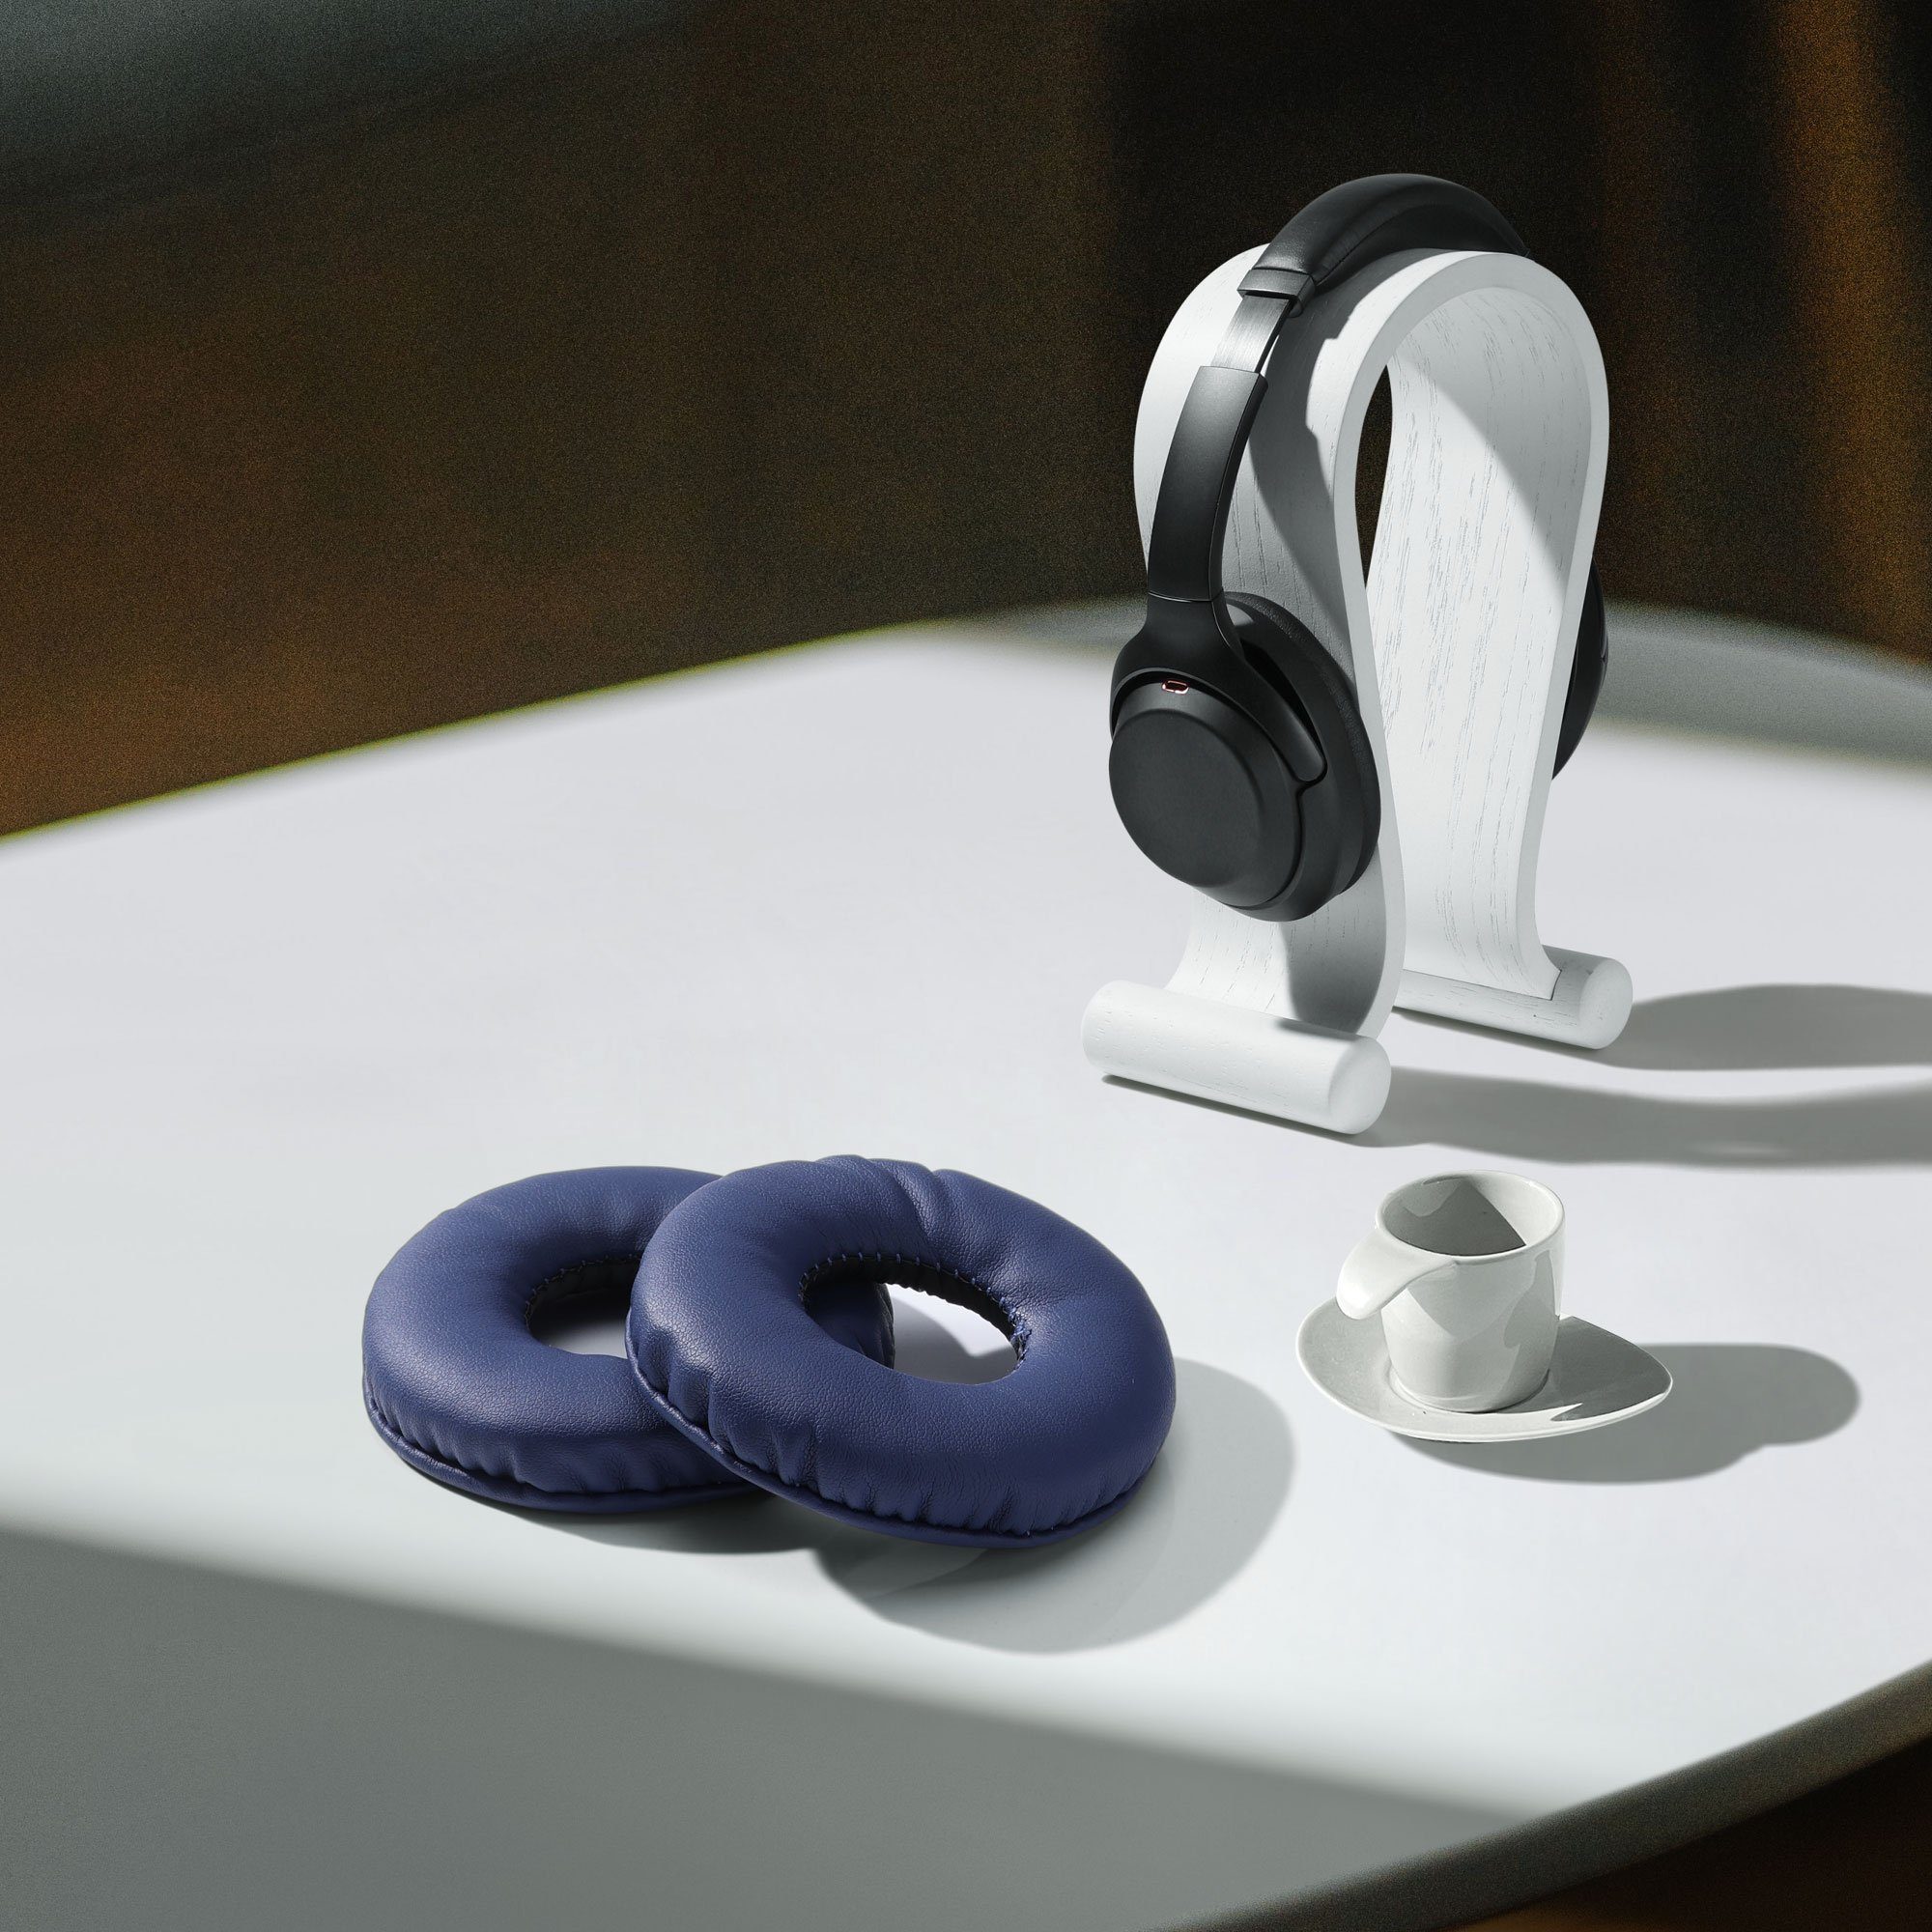 Ear Polster 2x WH-CH510 Ohrpolster Polster Headphones) kwmobile Blau für Ohr Over (Ohrpolster Kopfhörer für - Kunstleder Sony